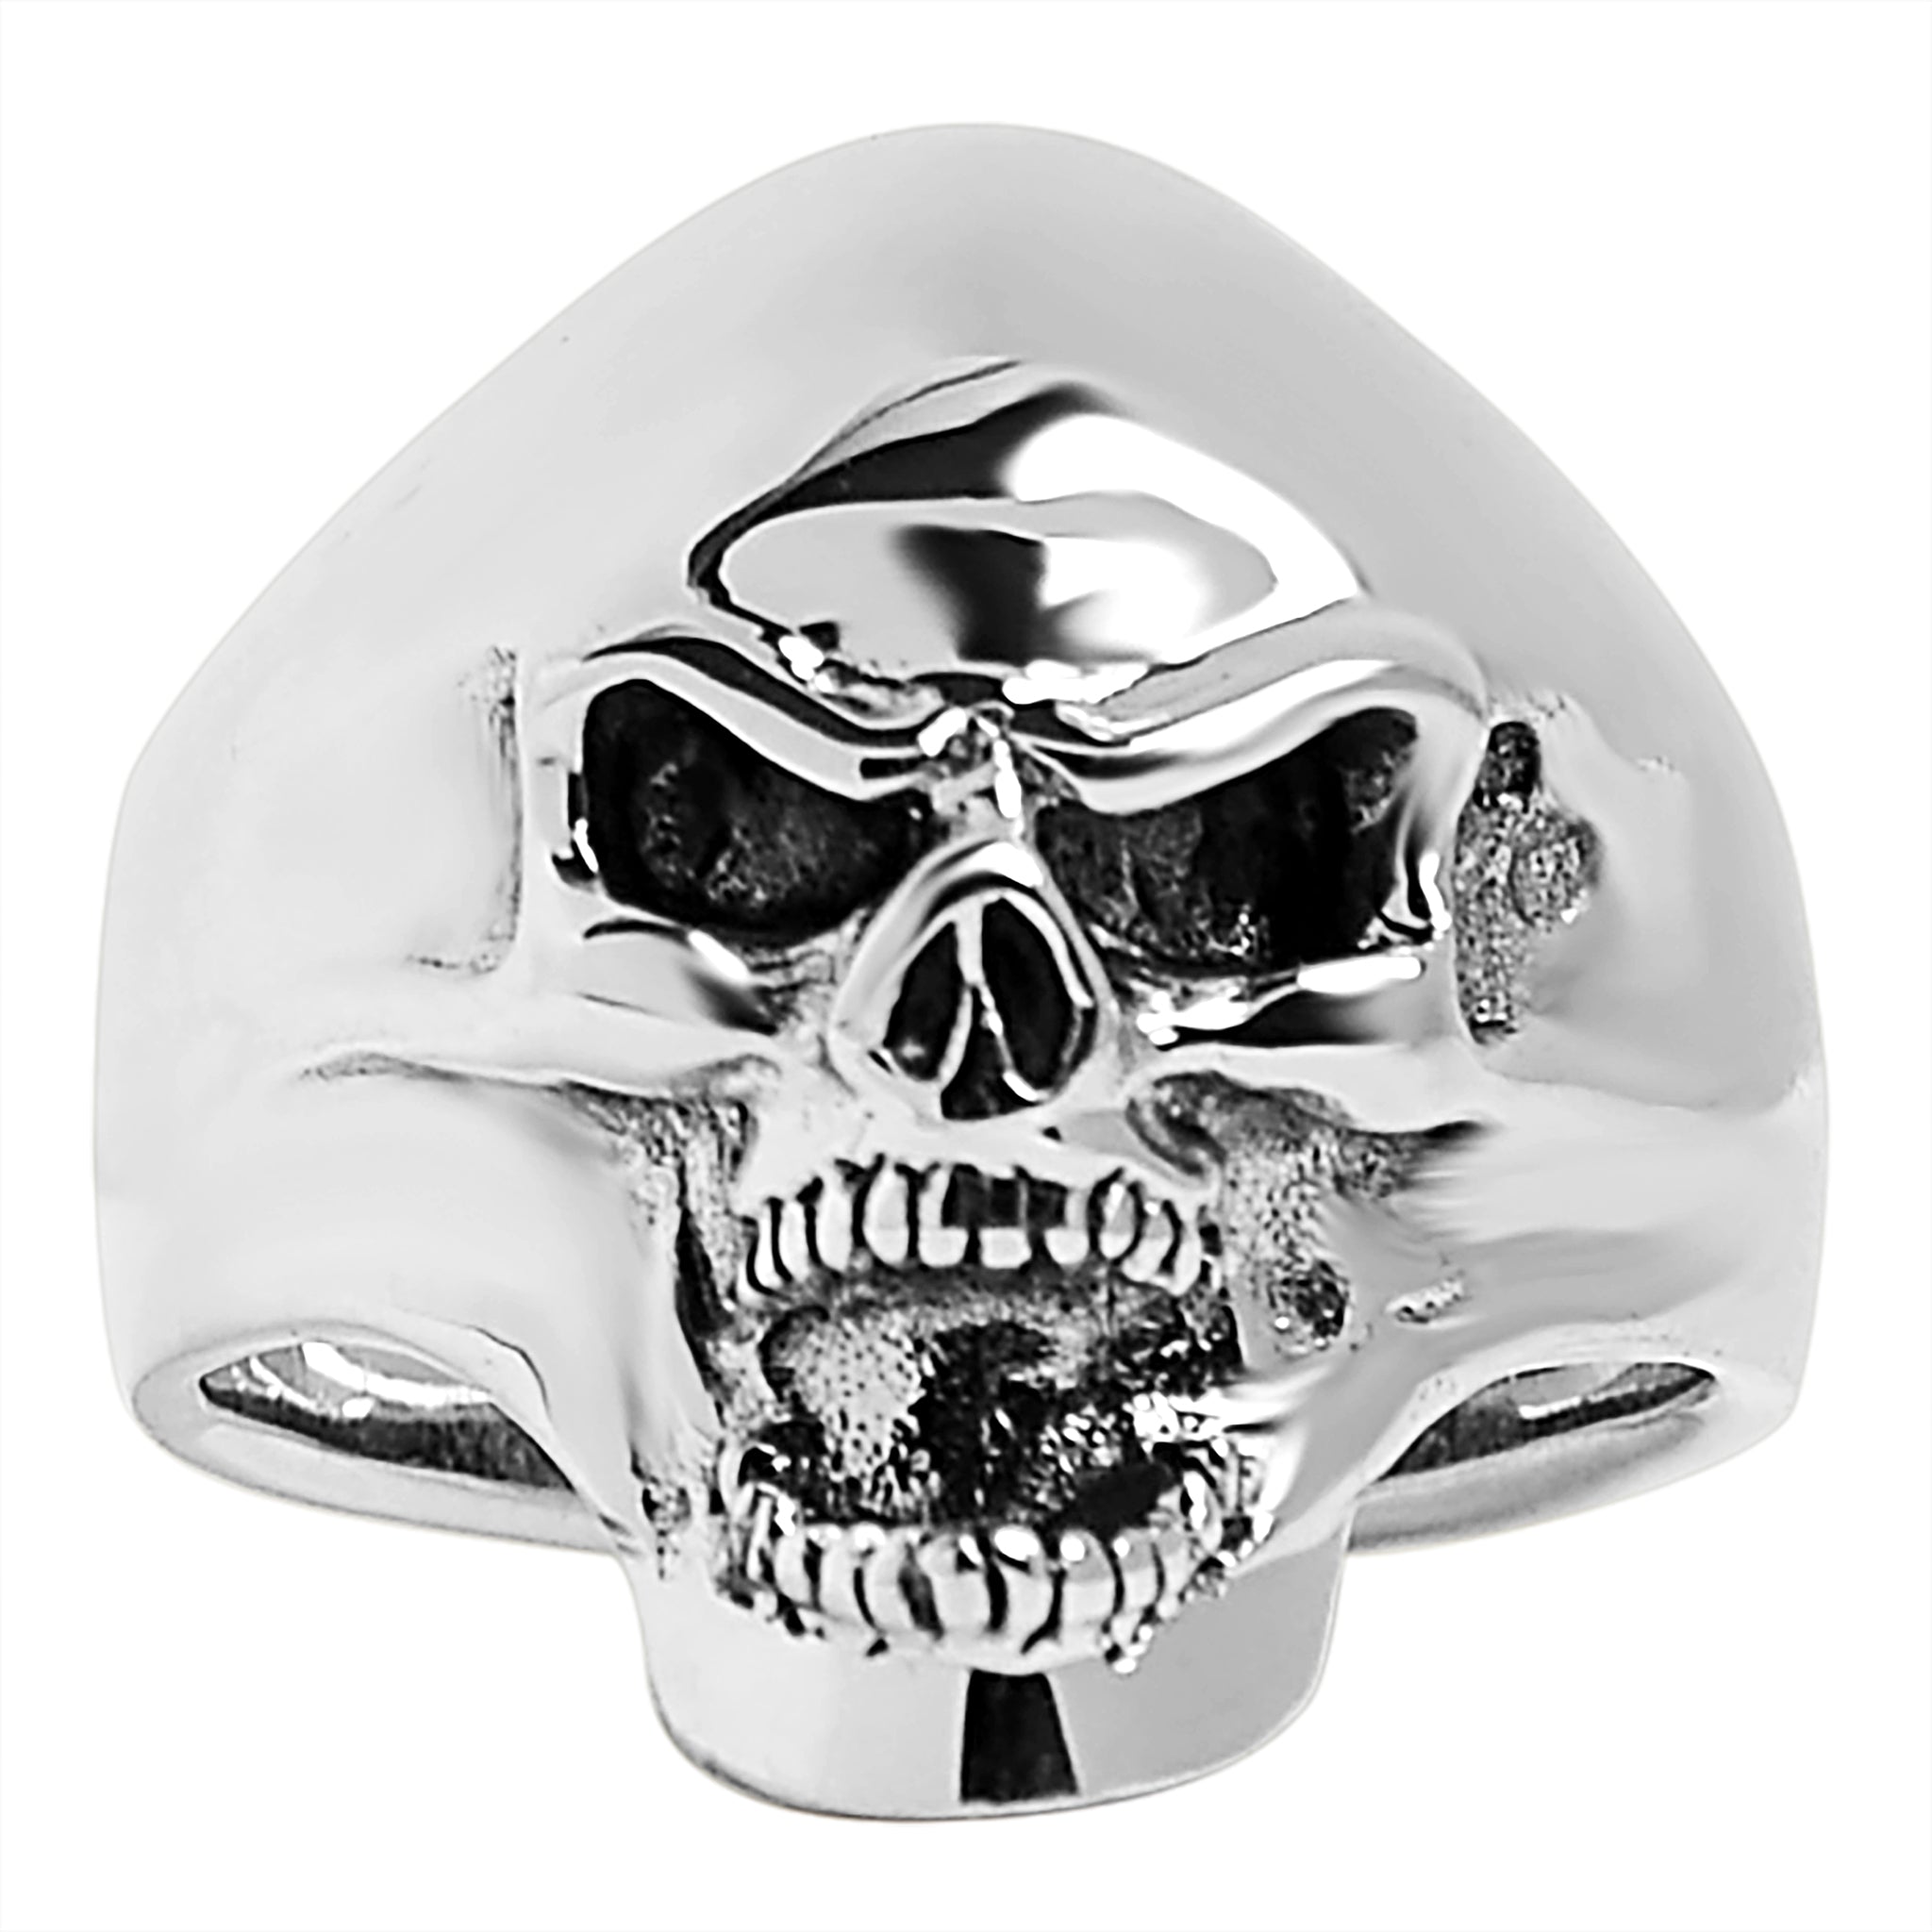 Sterling Silver Screaming Skull Ring / SSR0011-sterling silver pendant- .925 sterling silver pendant- Black Friday Gift- silver pendant- necklace pendant